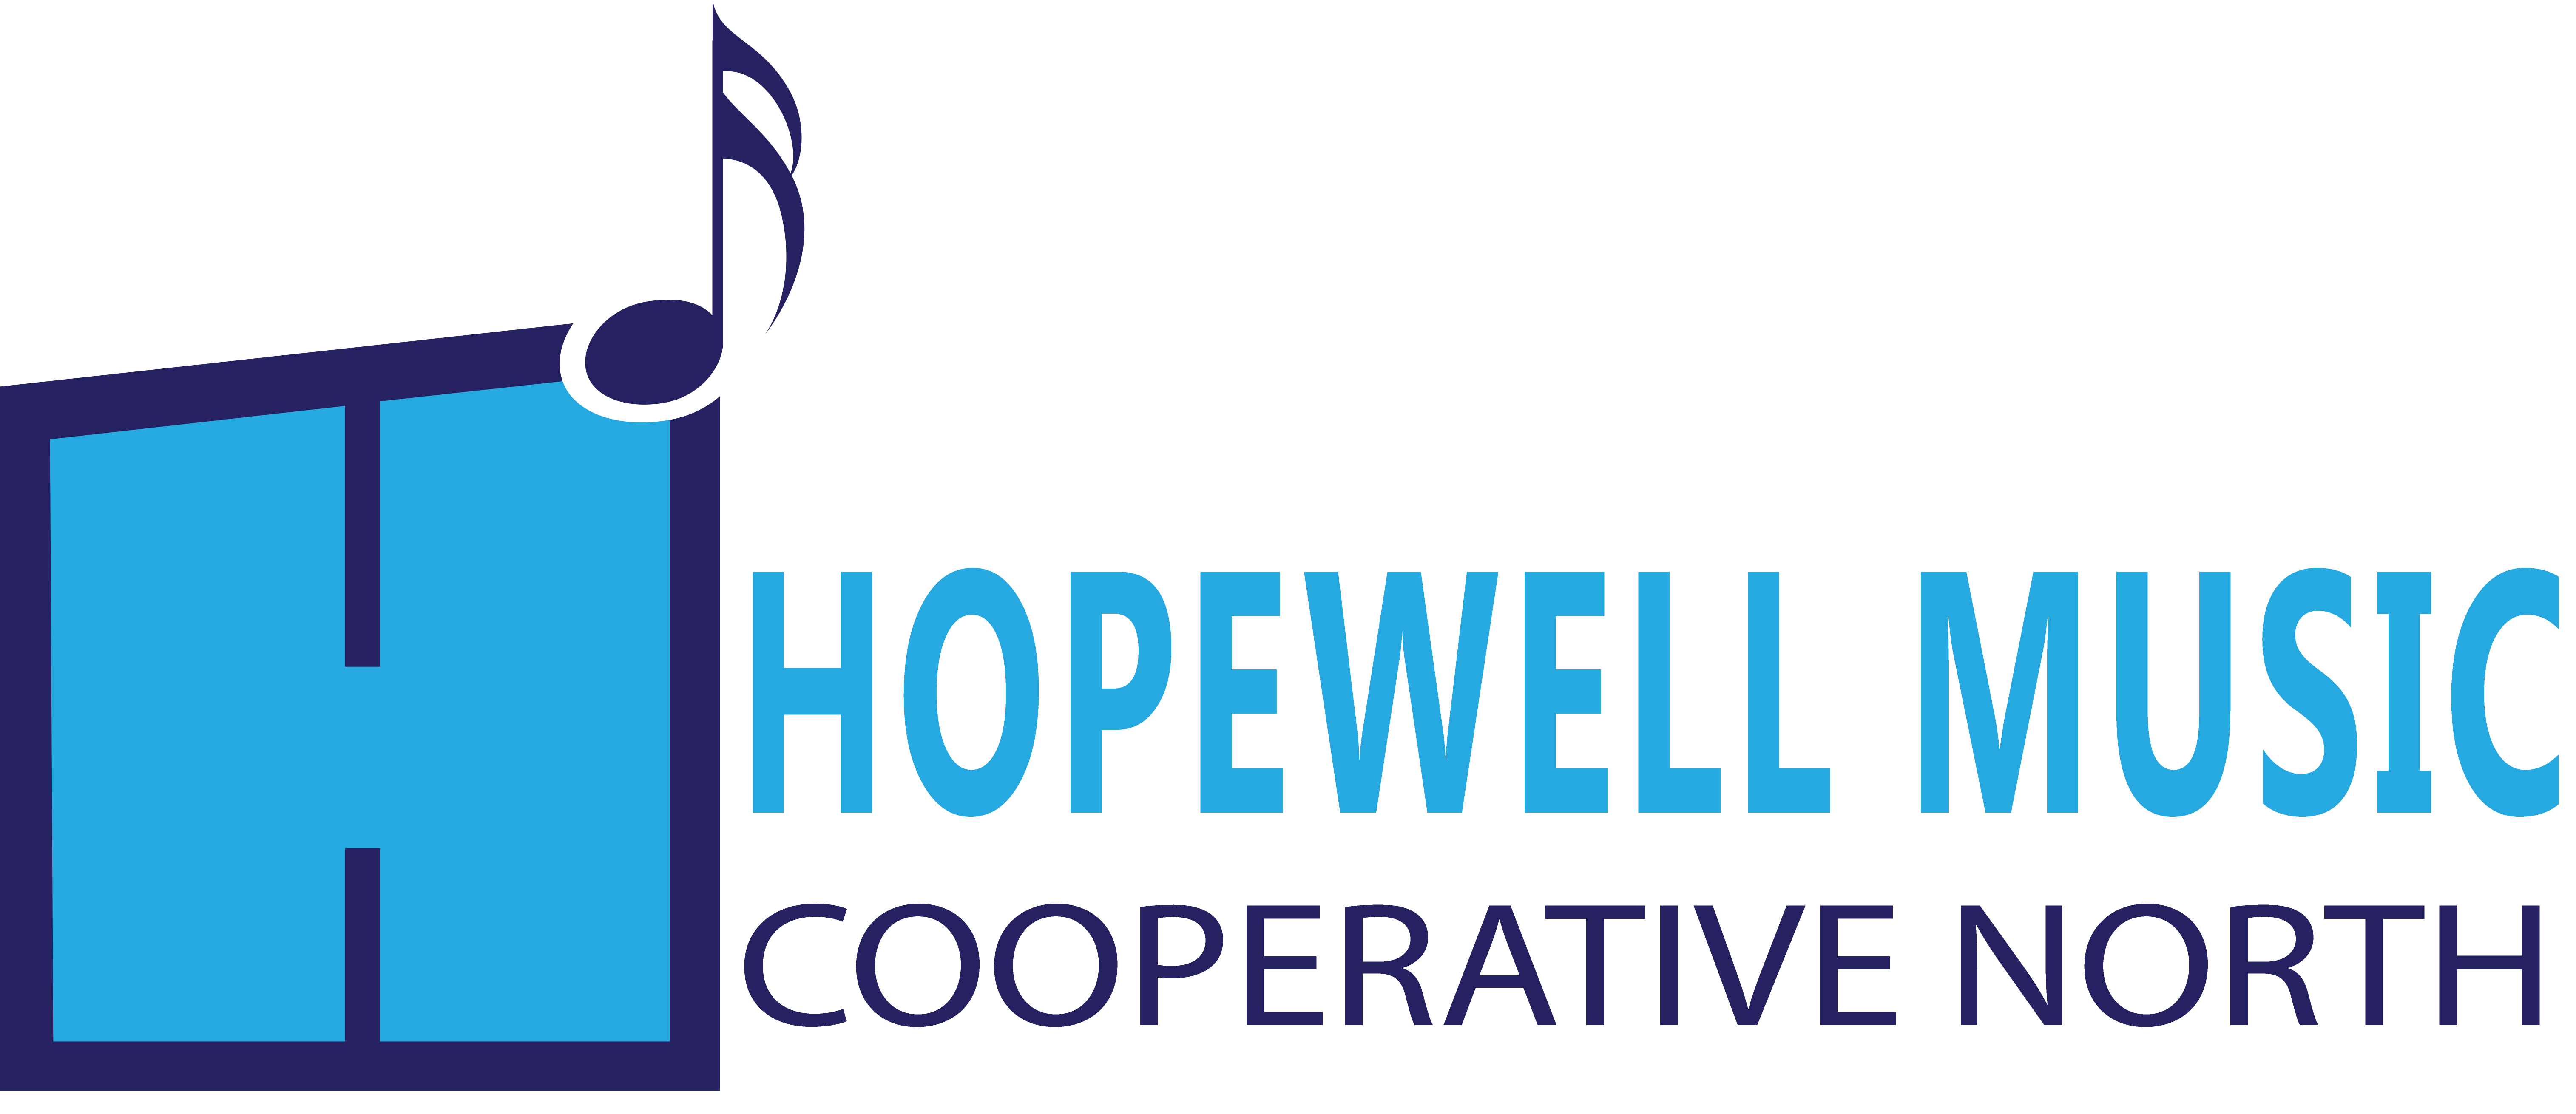 Hopewellmusic logo